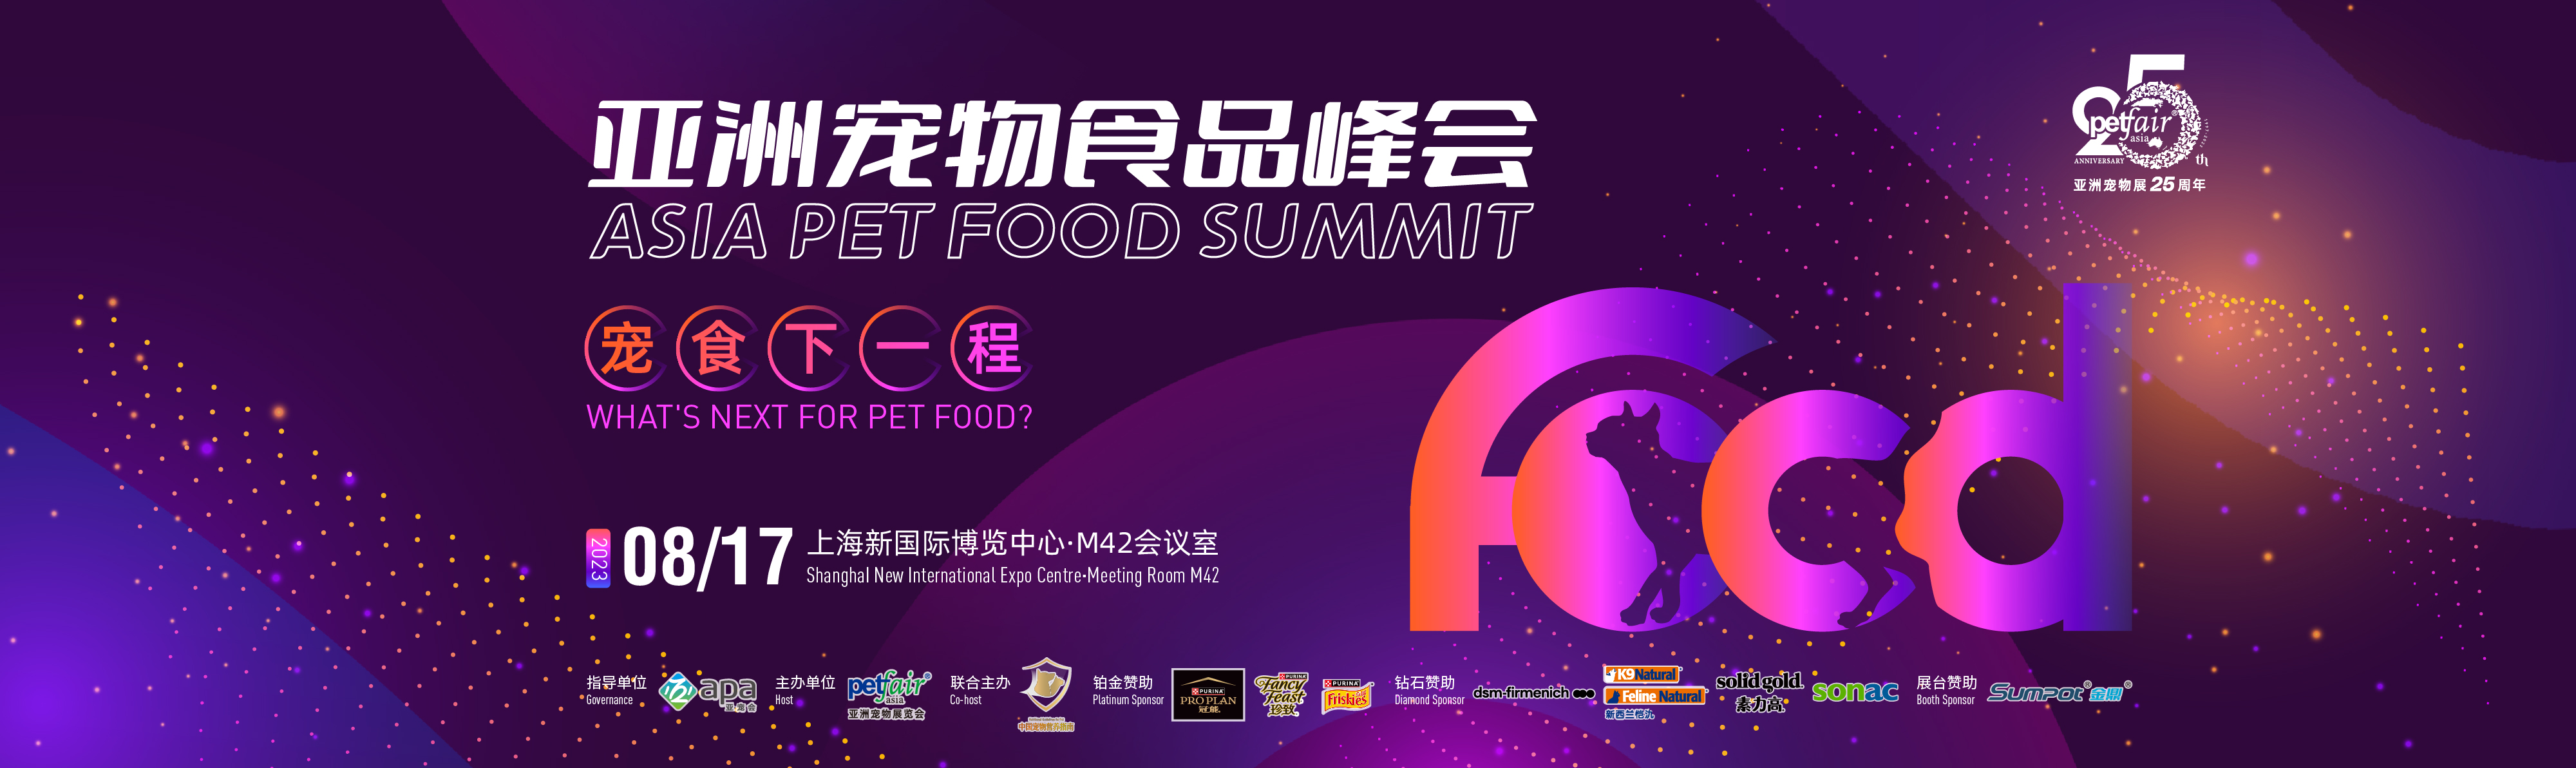 第二十五届亚洲宠物展上海新国际博览中心